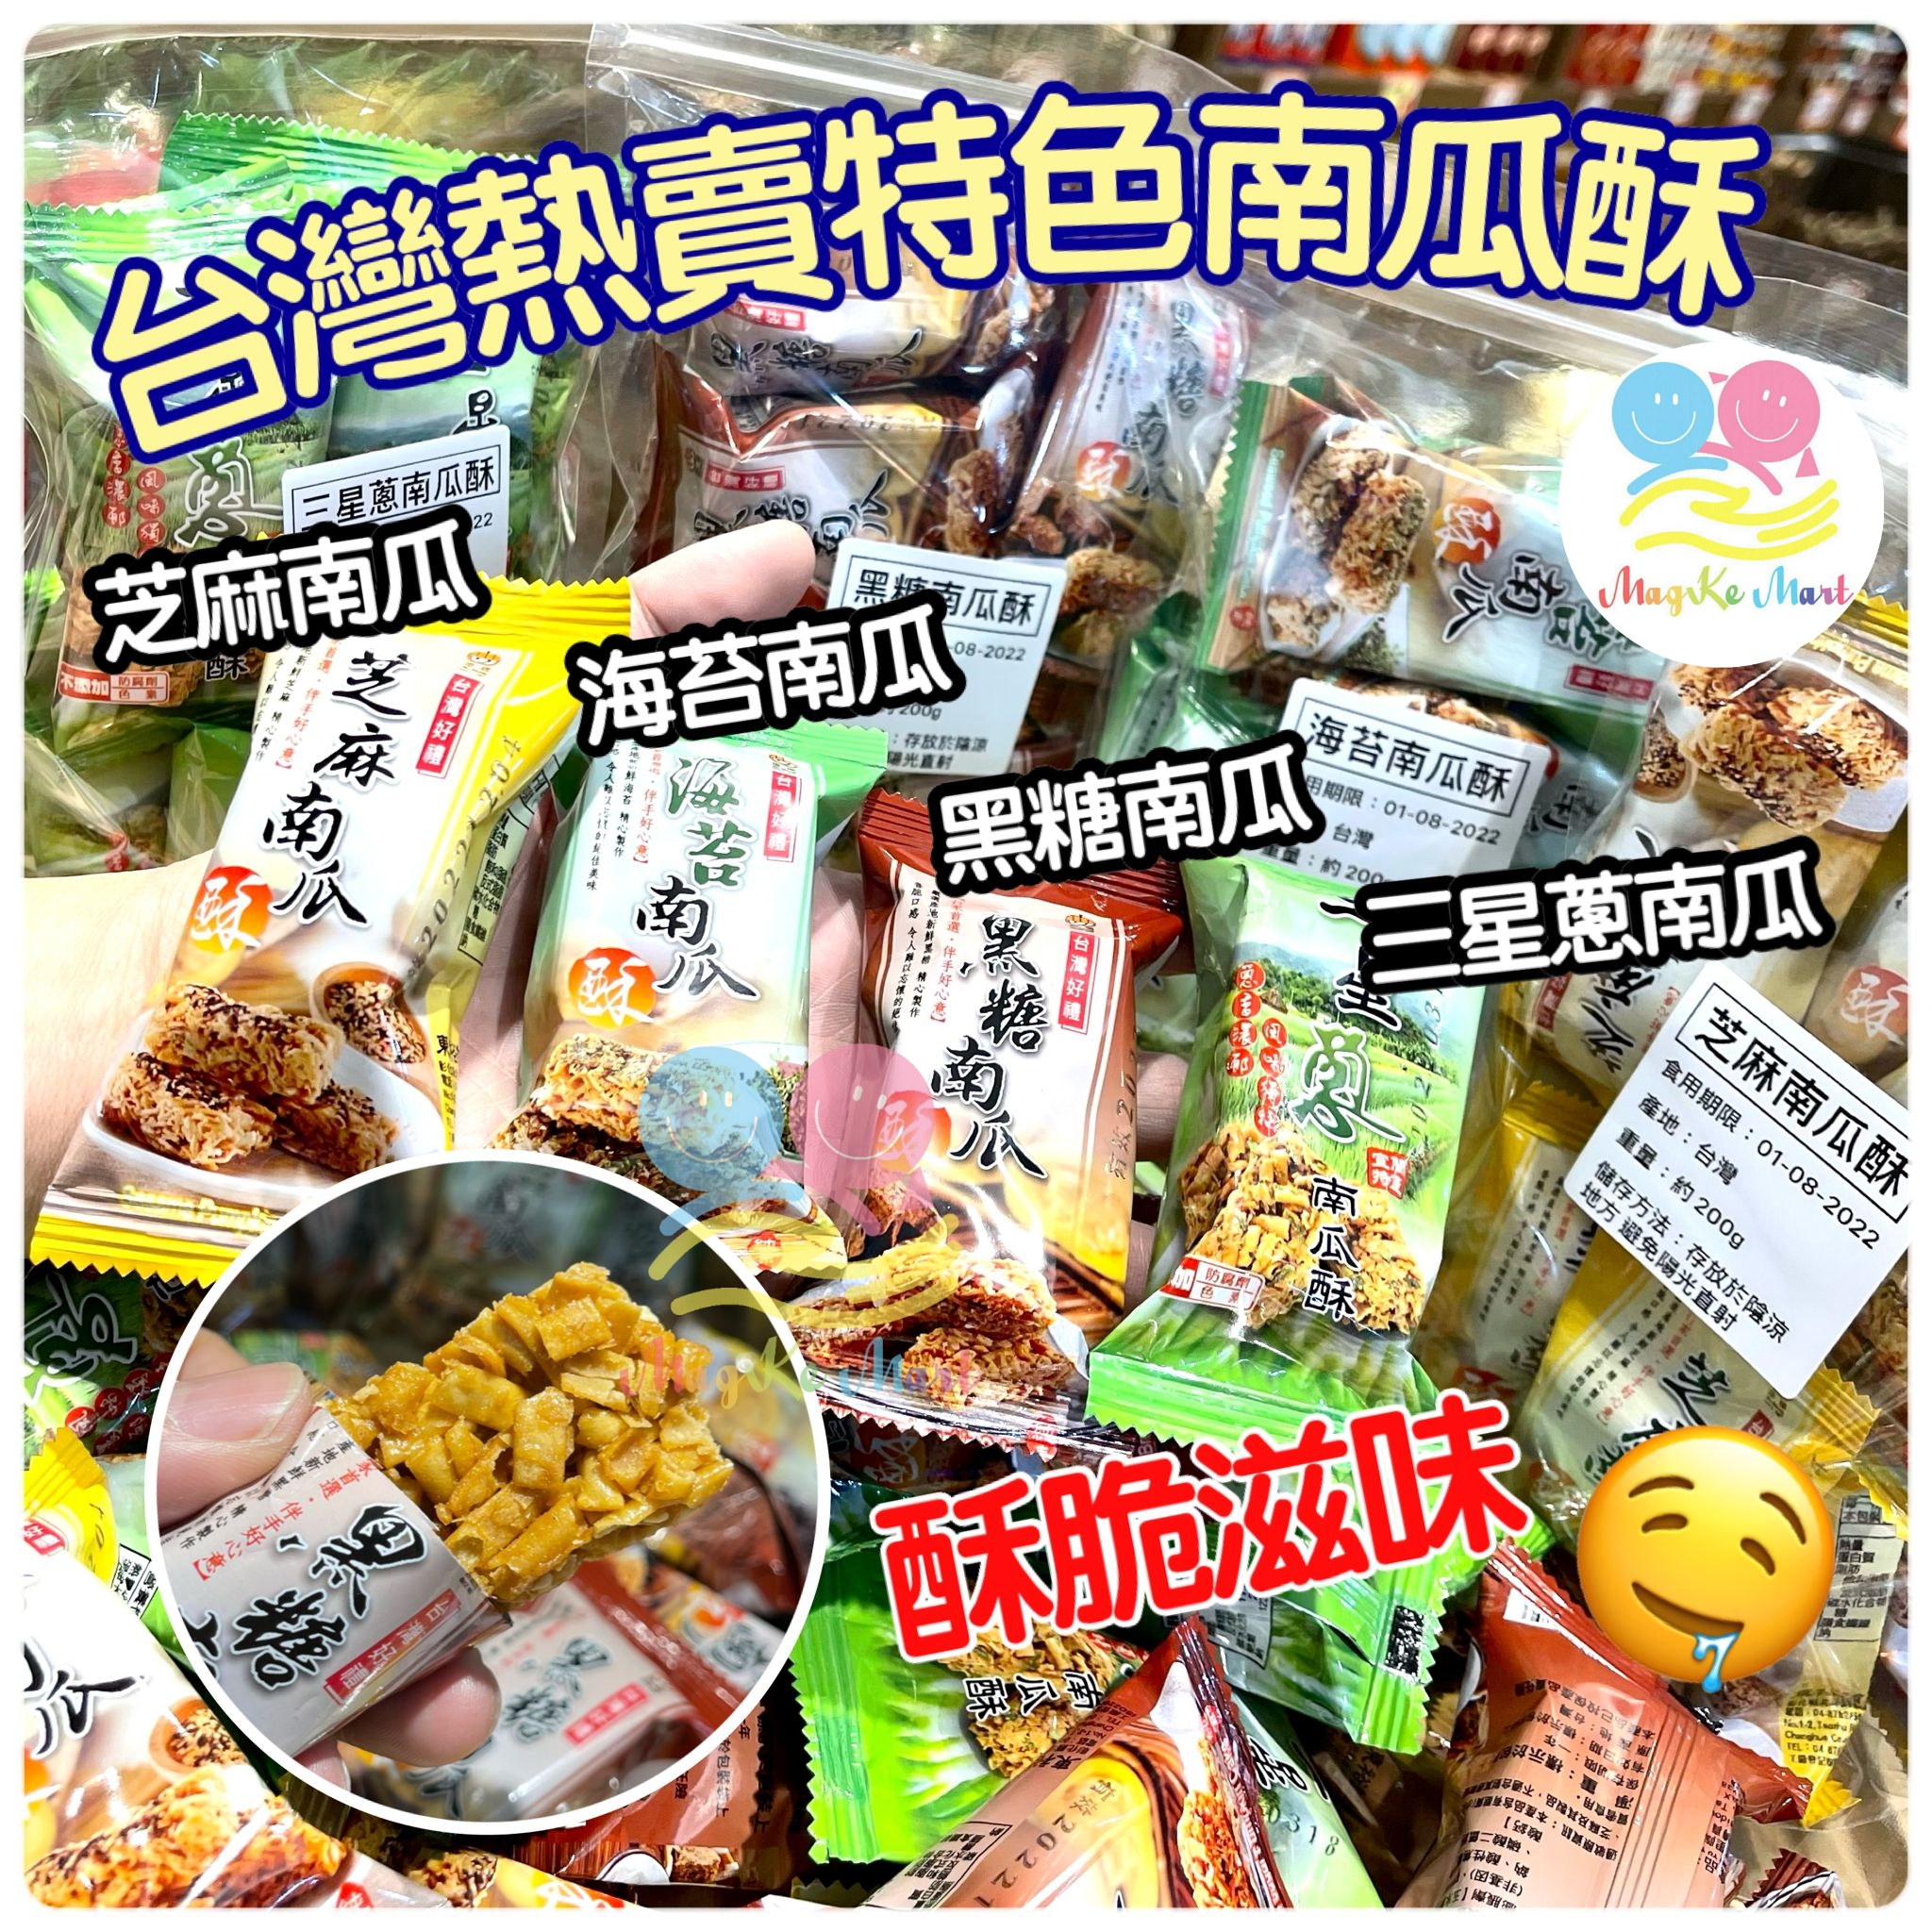 台灣熱賣經典南瓜酥 200g (D) 三星蔥南瓜酥